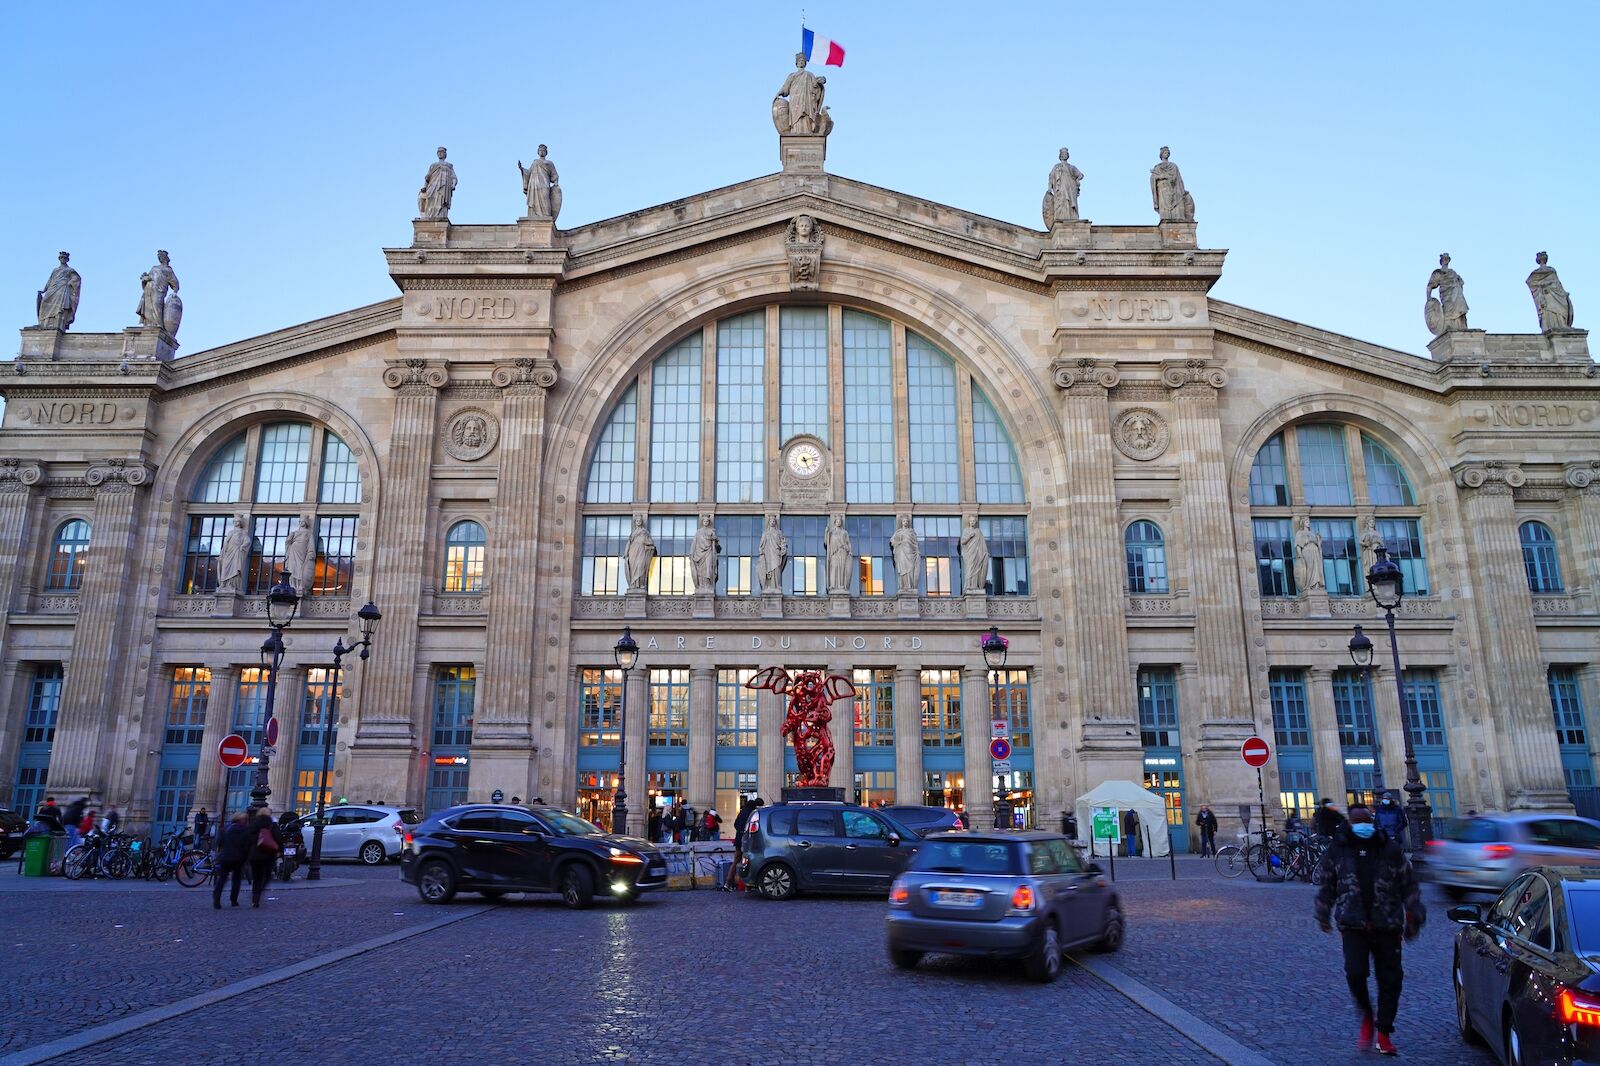 Paris Train Stations: Gare du Nord